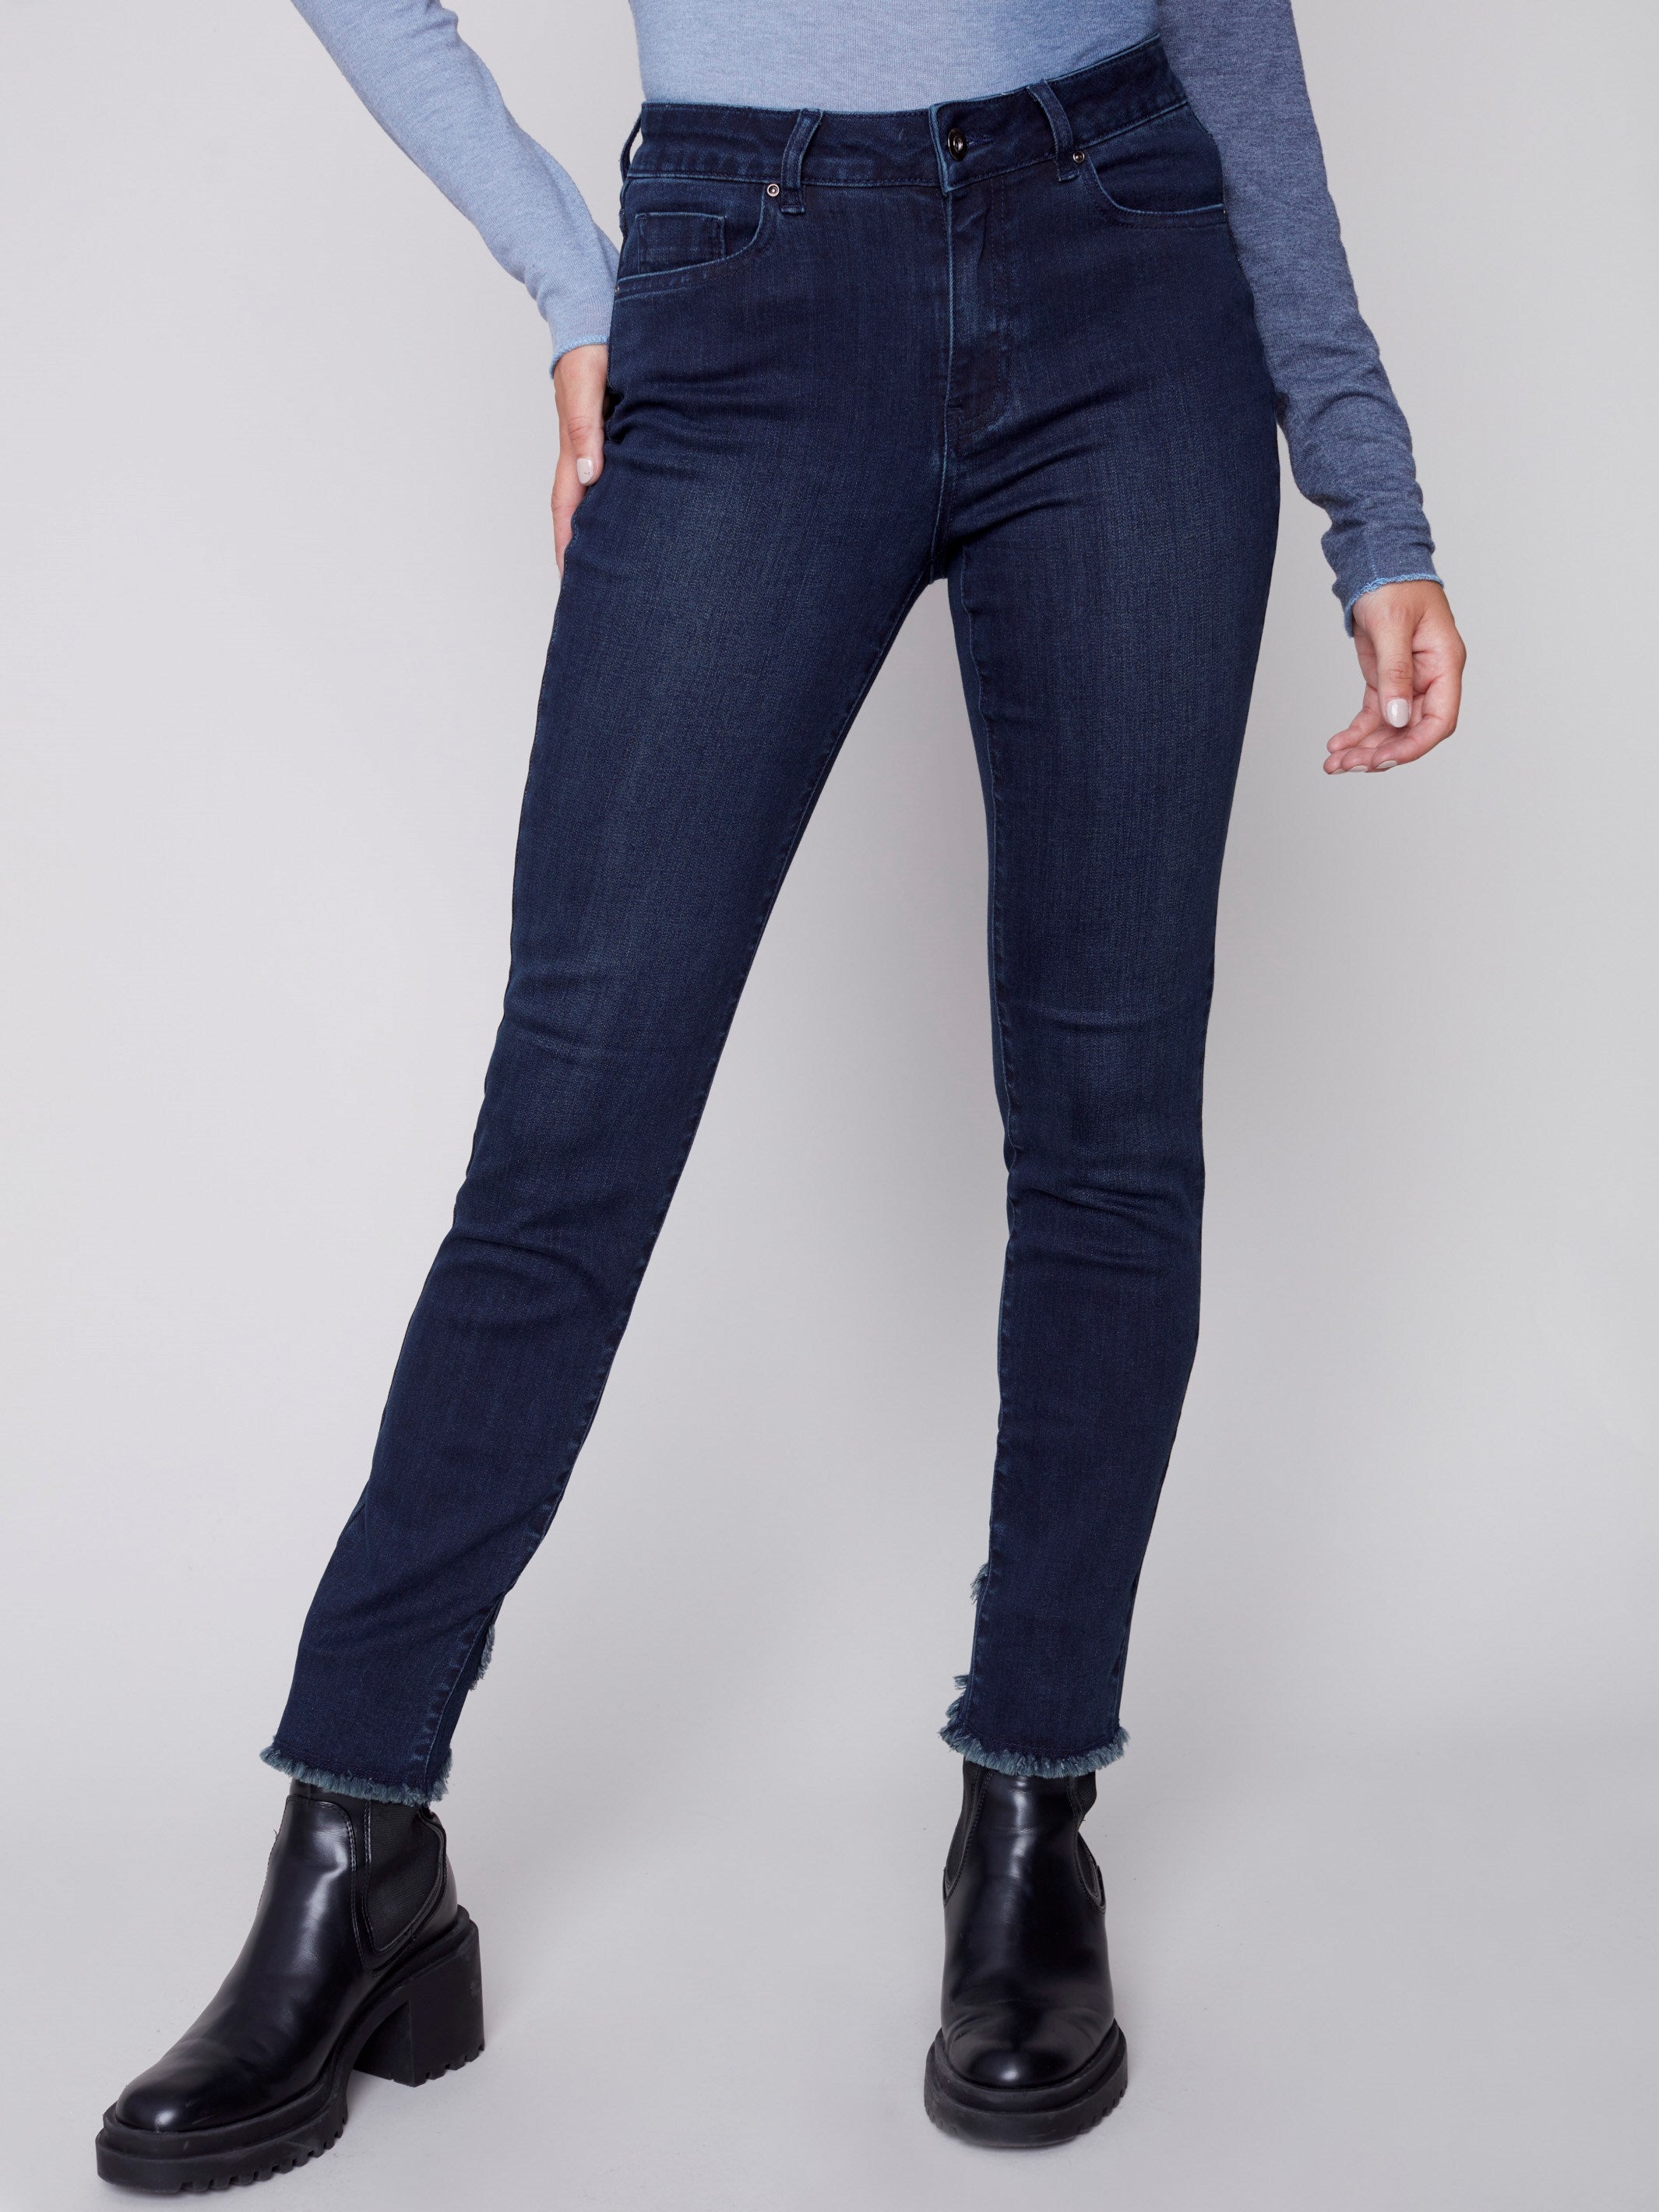 Jeans extensibles avec ourlet tulipe - Bleu noir